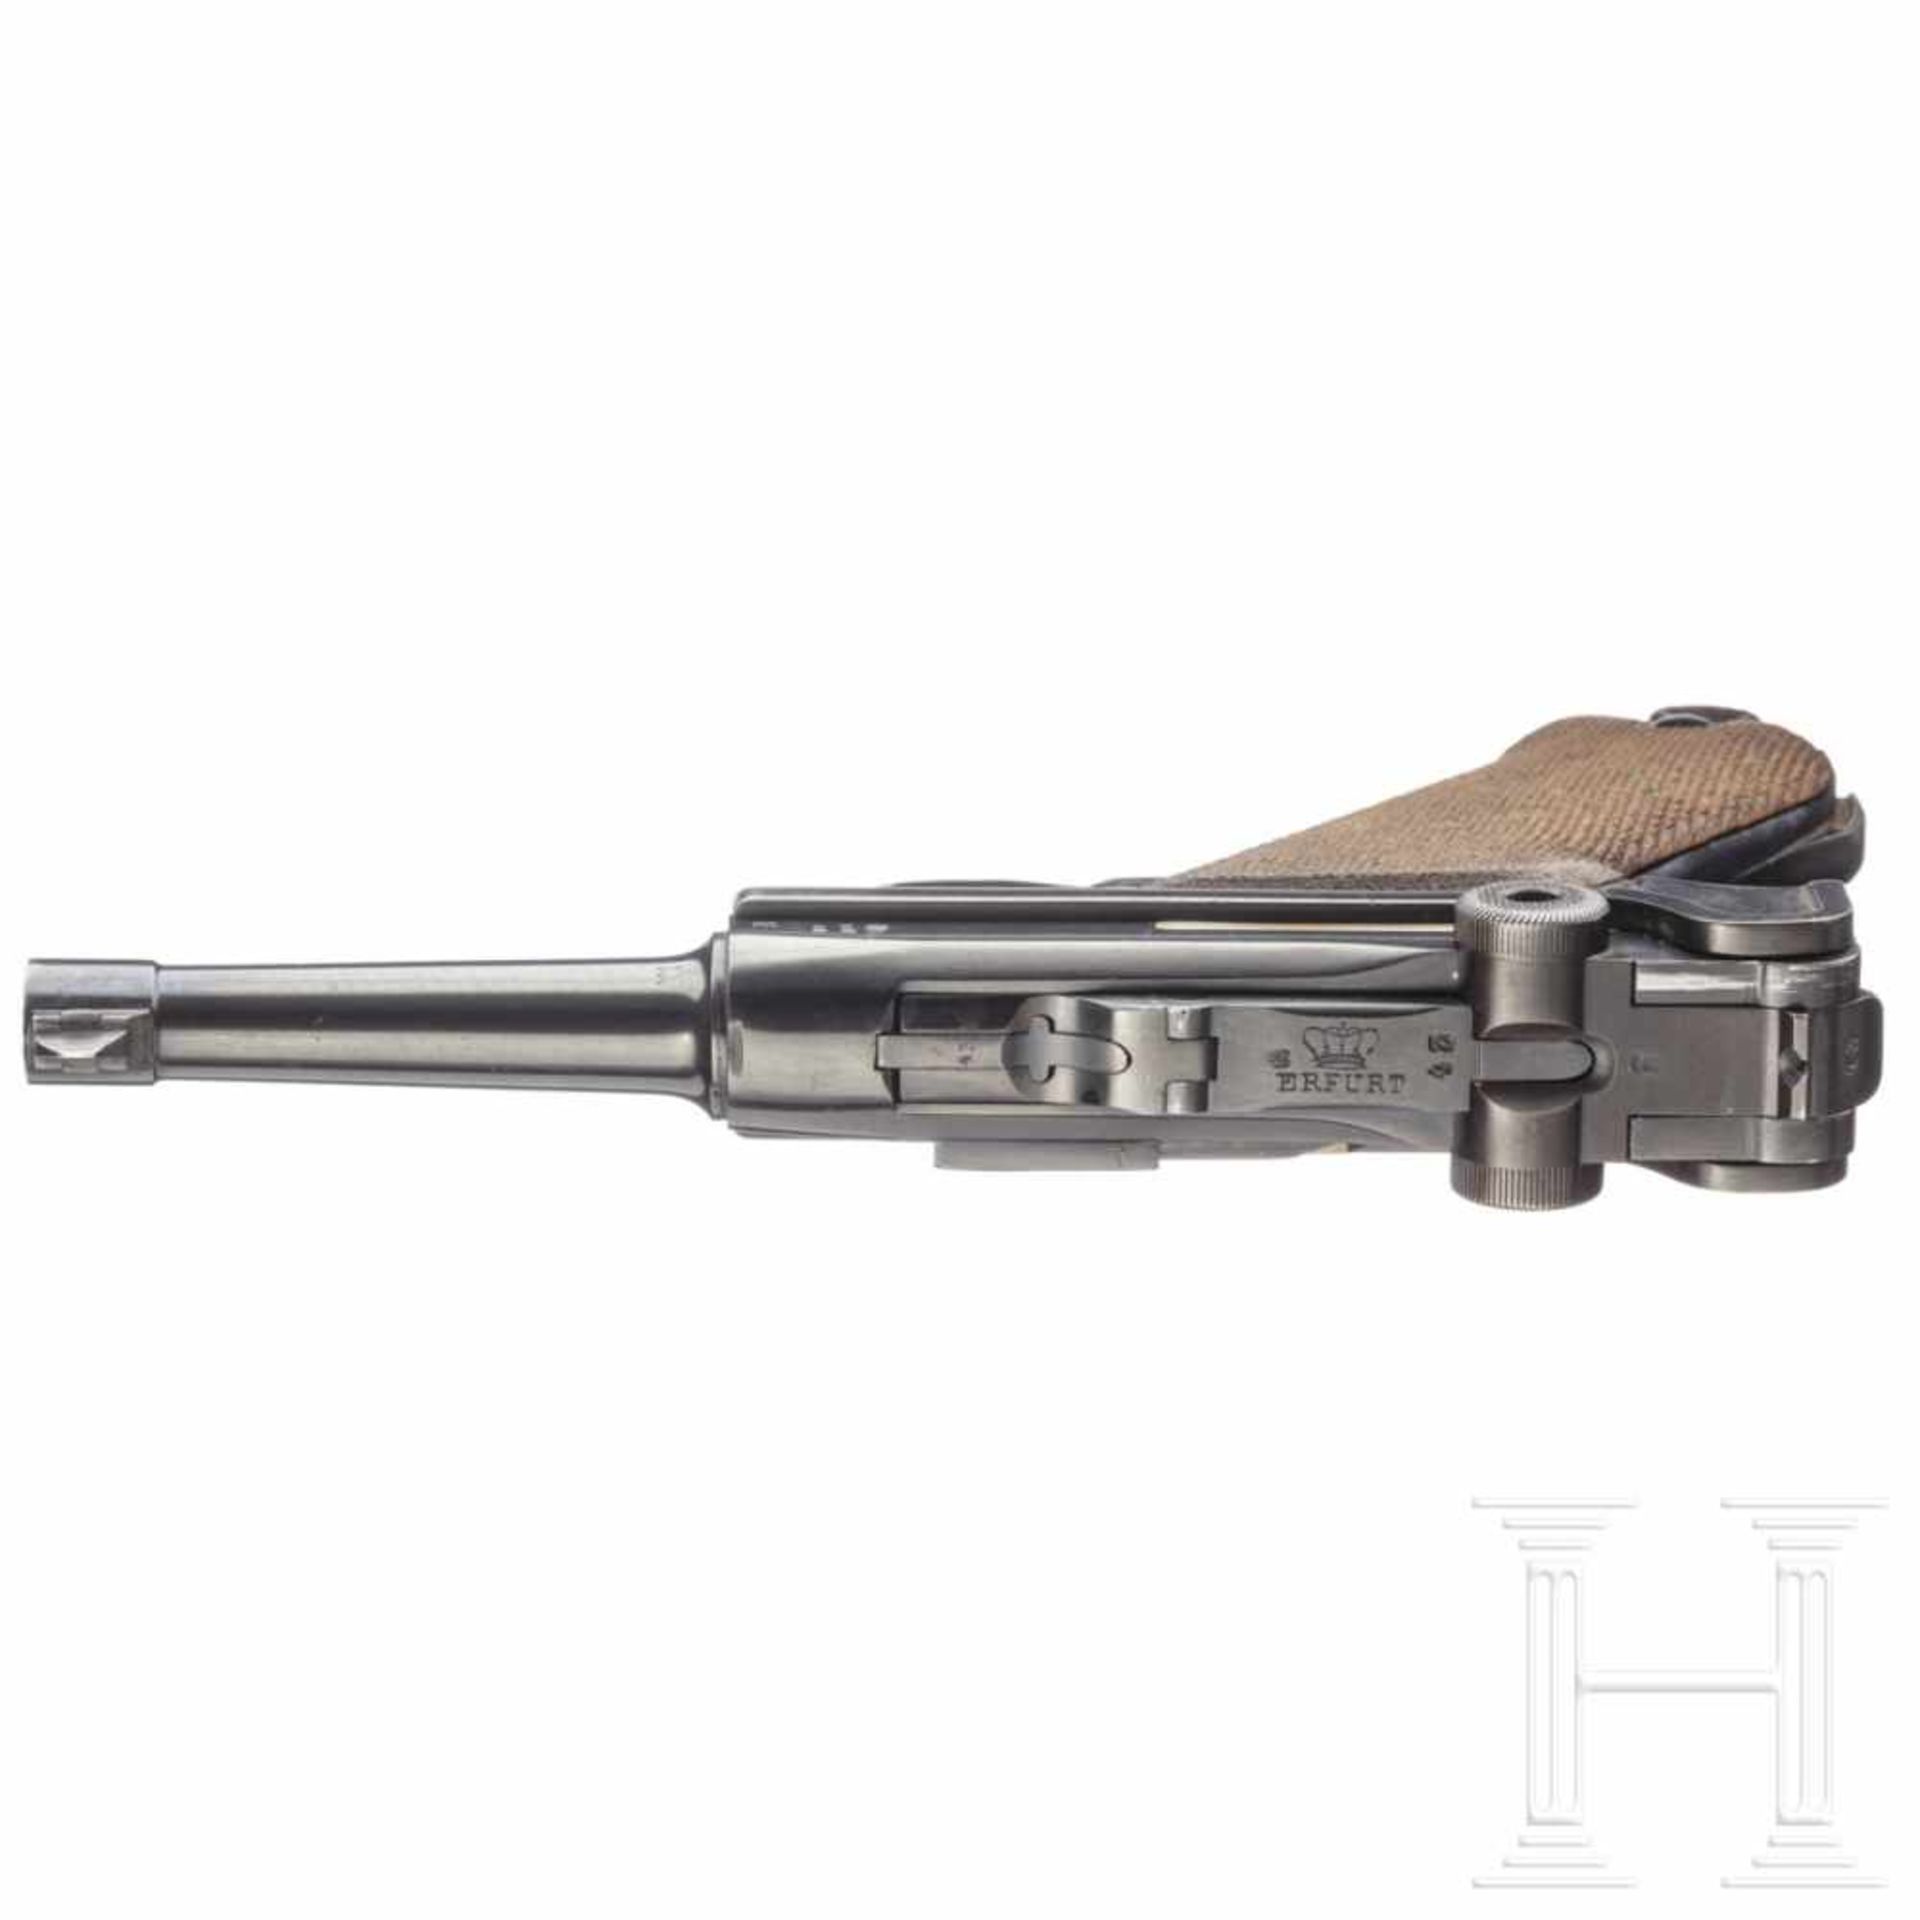 Pistole 08, ErfurtKal. 9mm Luger, Nr. 9943, Nummerngleich, inkl. Schlagbolzen und Griffschalen. - Bild 3 aus 5